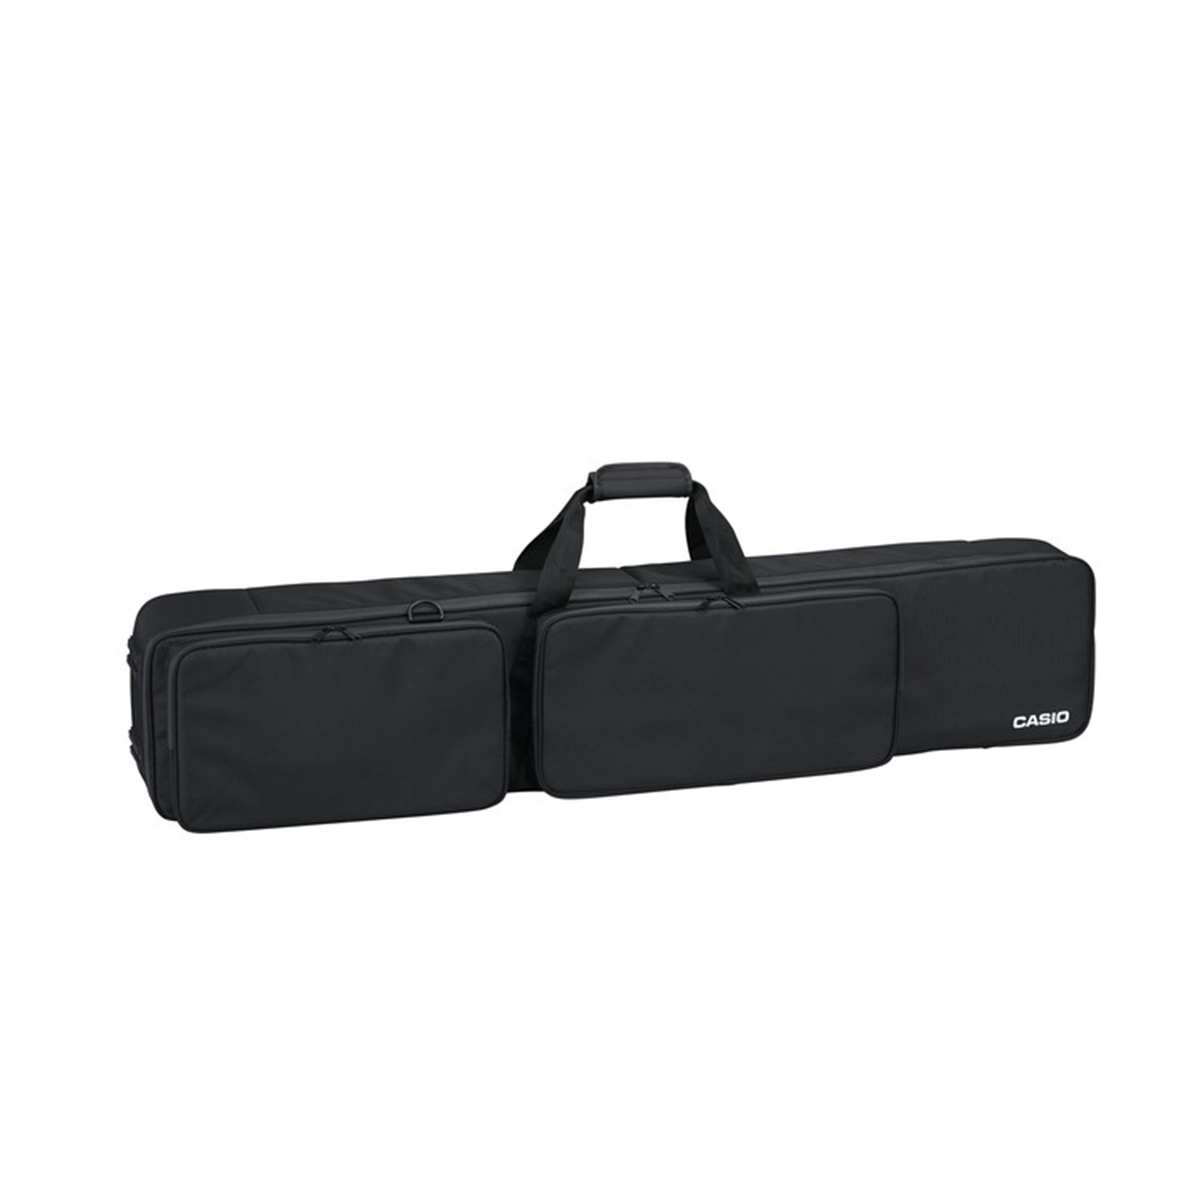 Casio SC800P Privia Piano Carry Bag